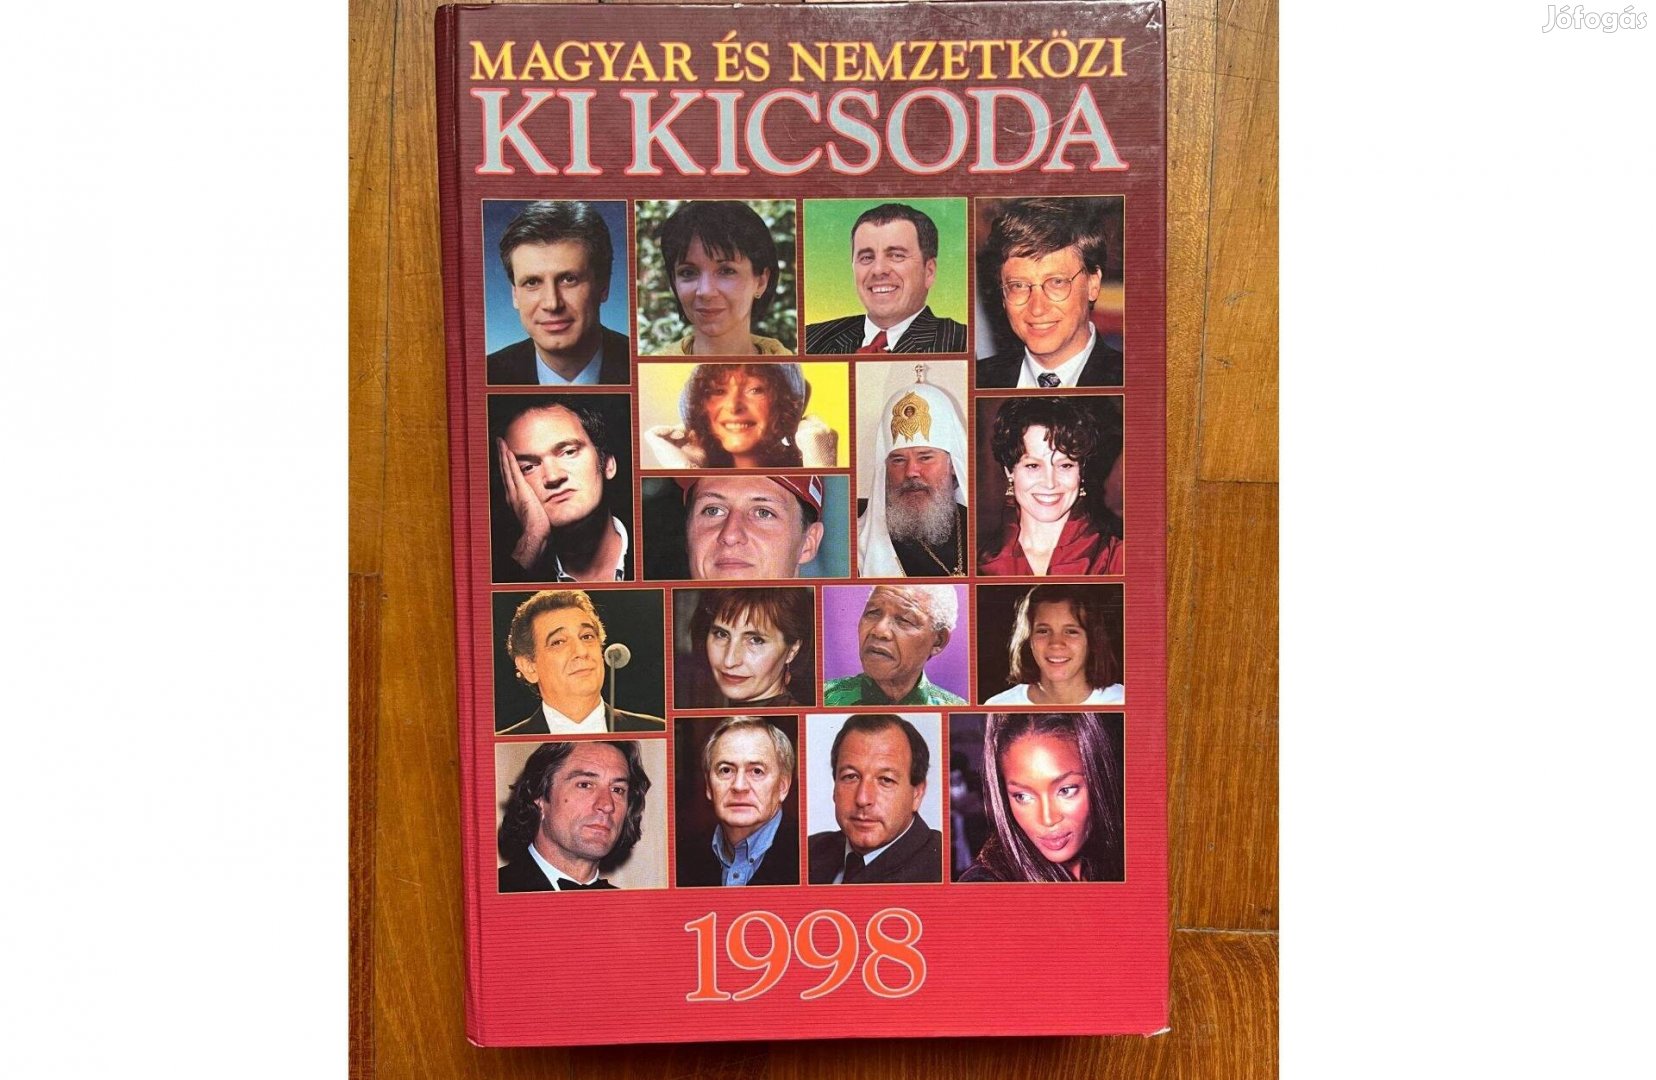 Magyar és nemzetközi ki kicsoda 1998 könyv